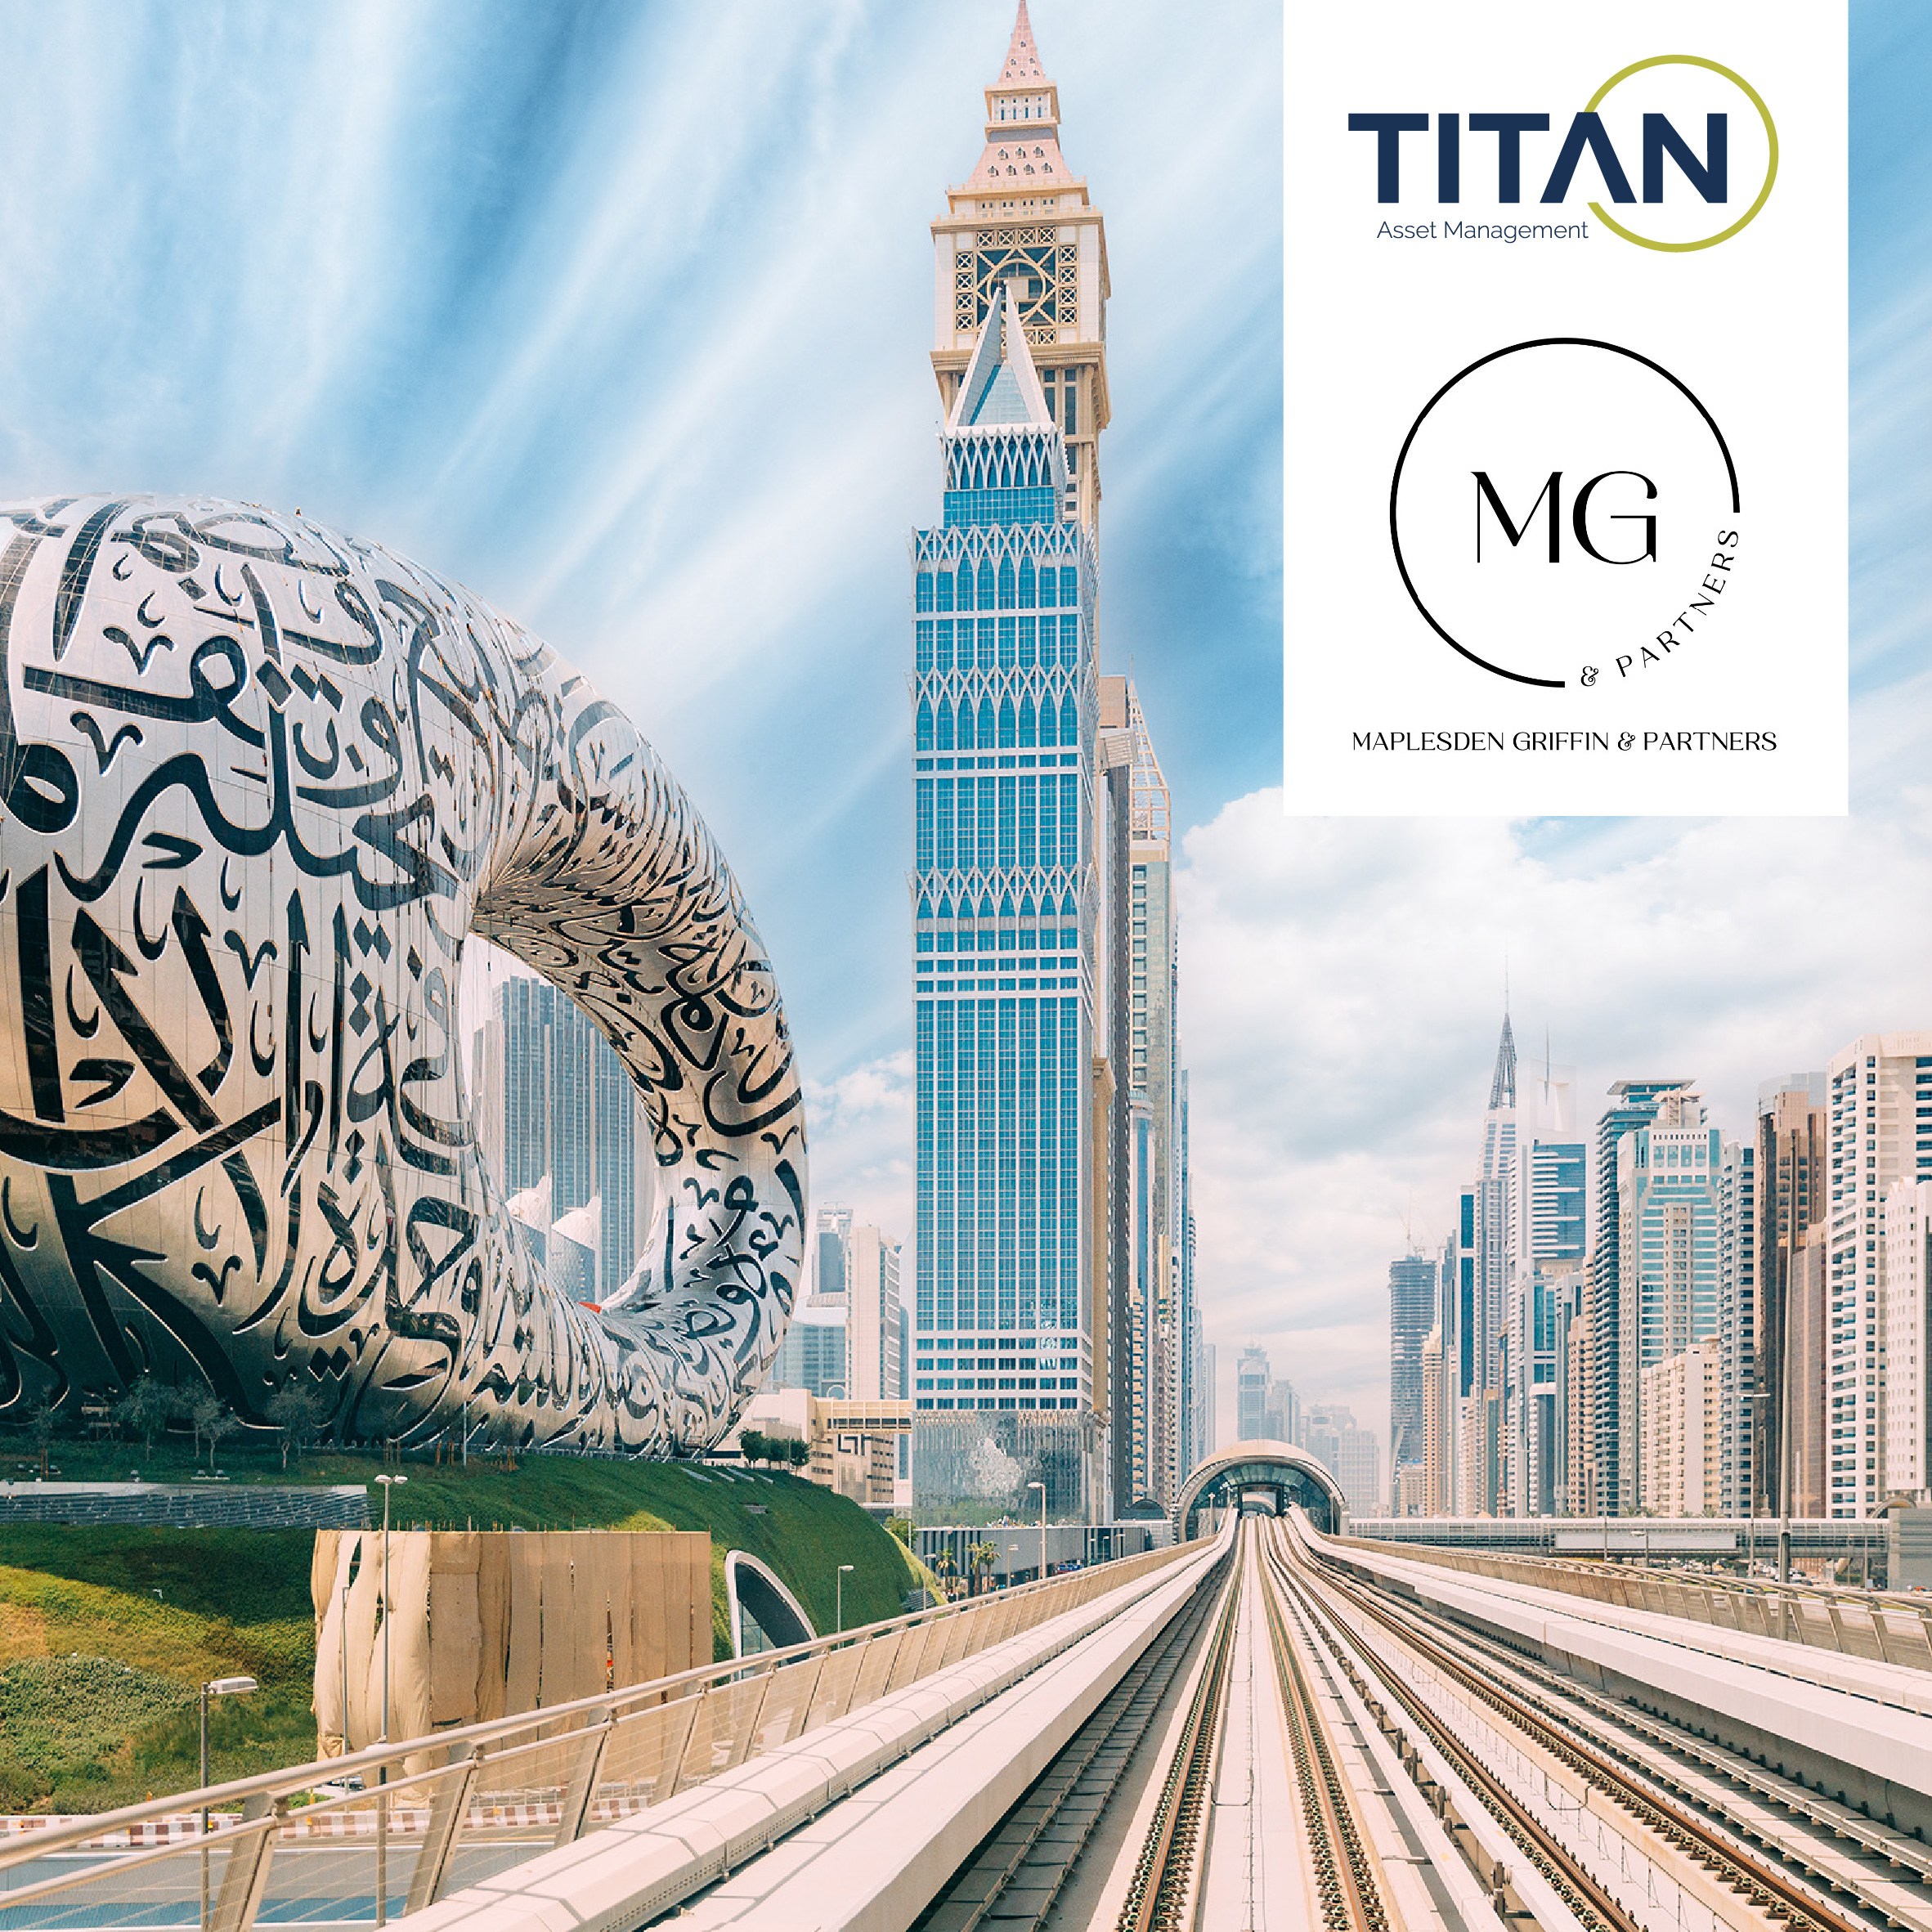 Titan Asset Management announces partnership with Maplesden Griffin & Partners